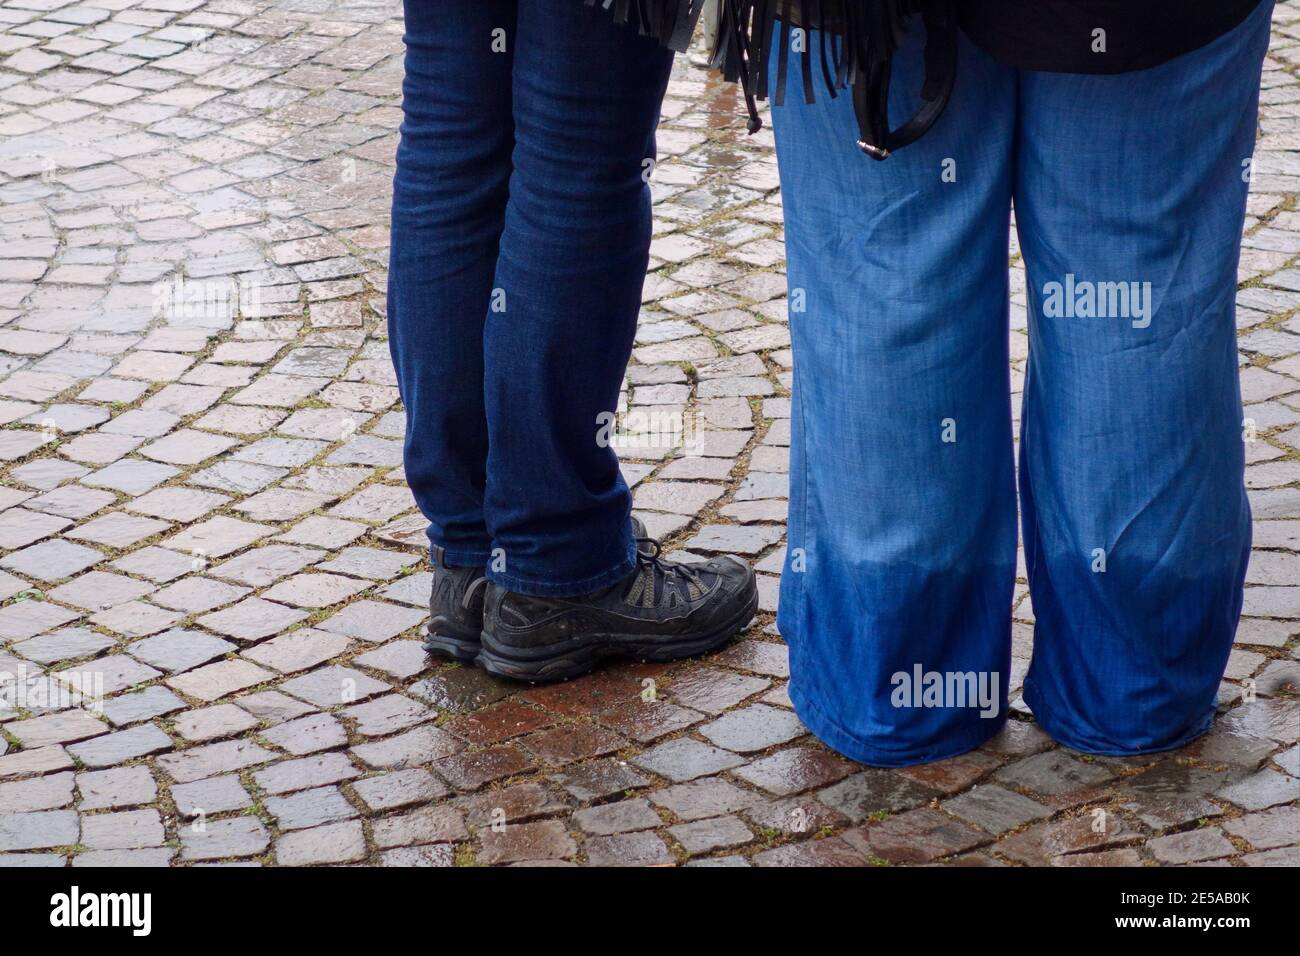 Das Bild zeigt die Beine von 2 Personen, die draußen im Nassen stehen, 1 die sehr nasse, regnernassgetränkte Jeans trägt Stockfoto